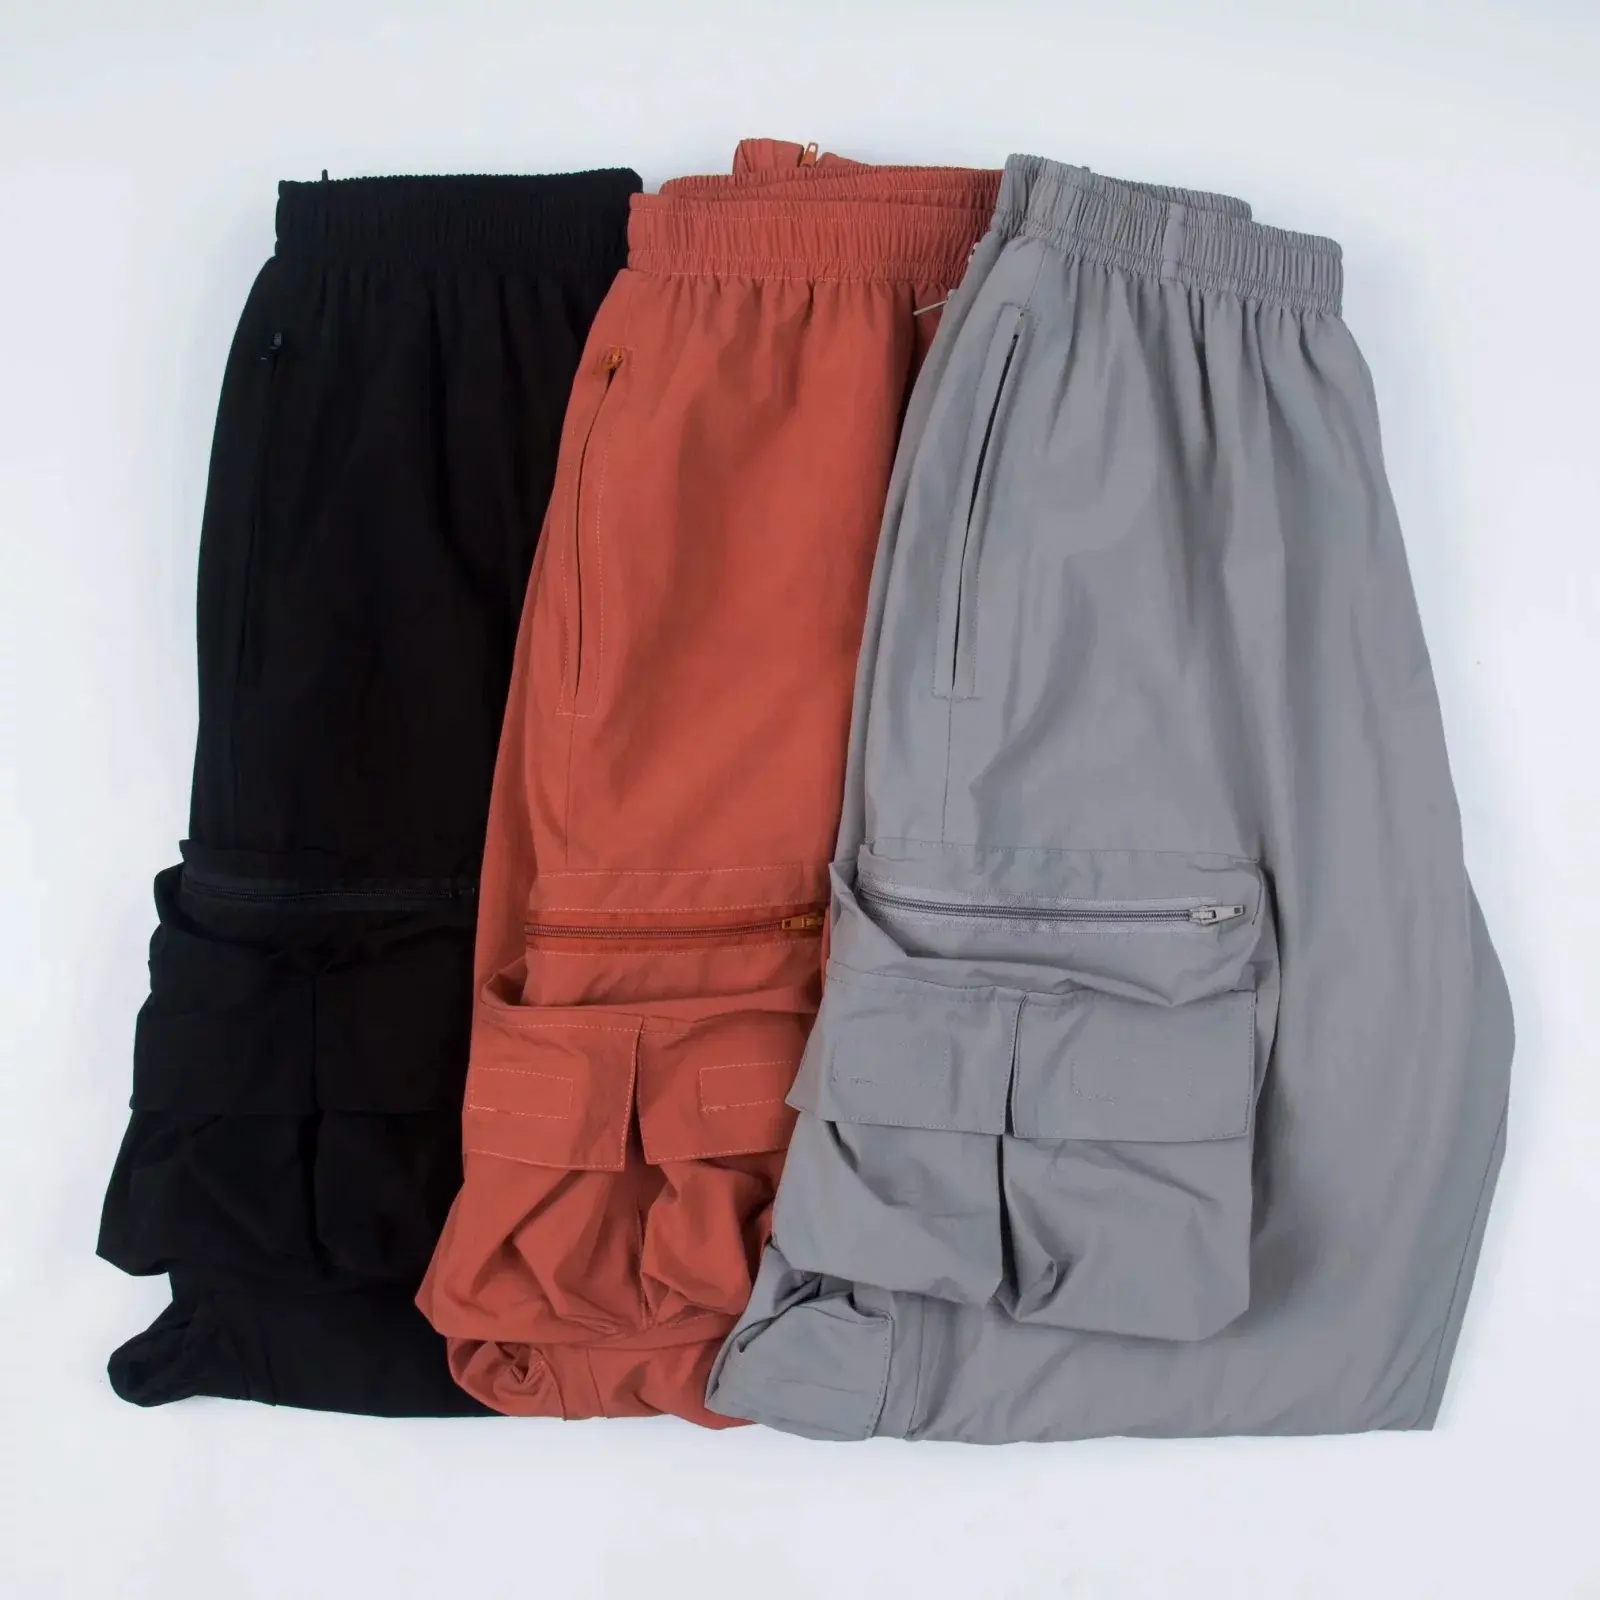 Pantalones deportivos holgados de cintura elástica para mujer, pantalón de chándal de Color sólido, largo hasta el tobillo, negro y gris